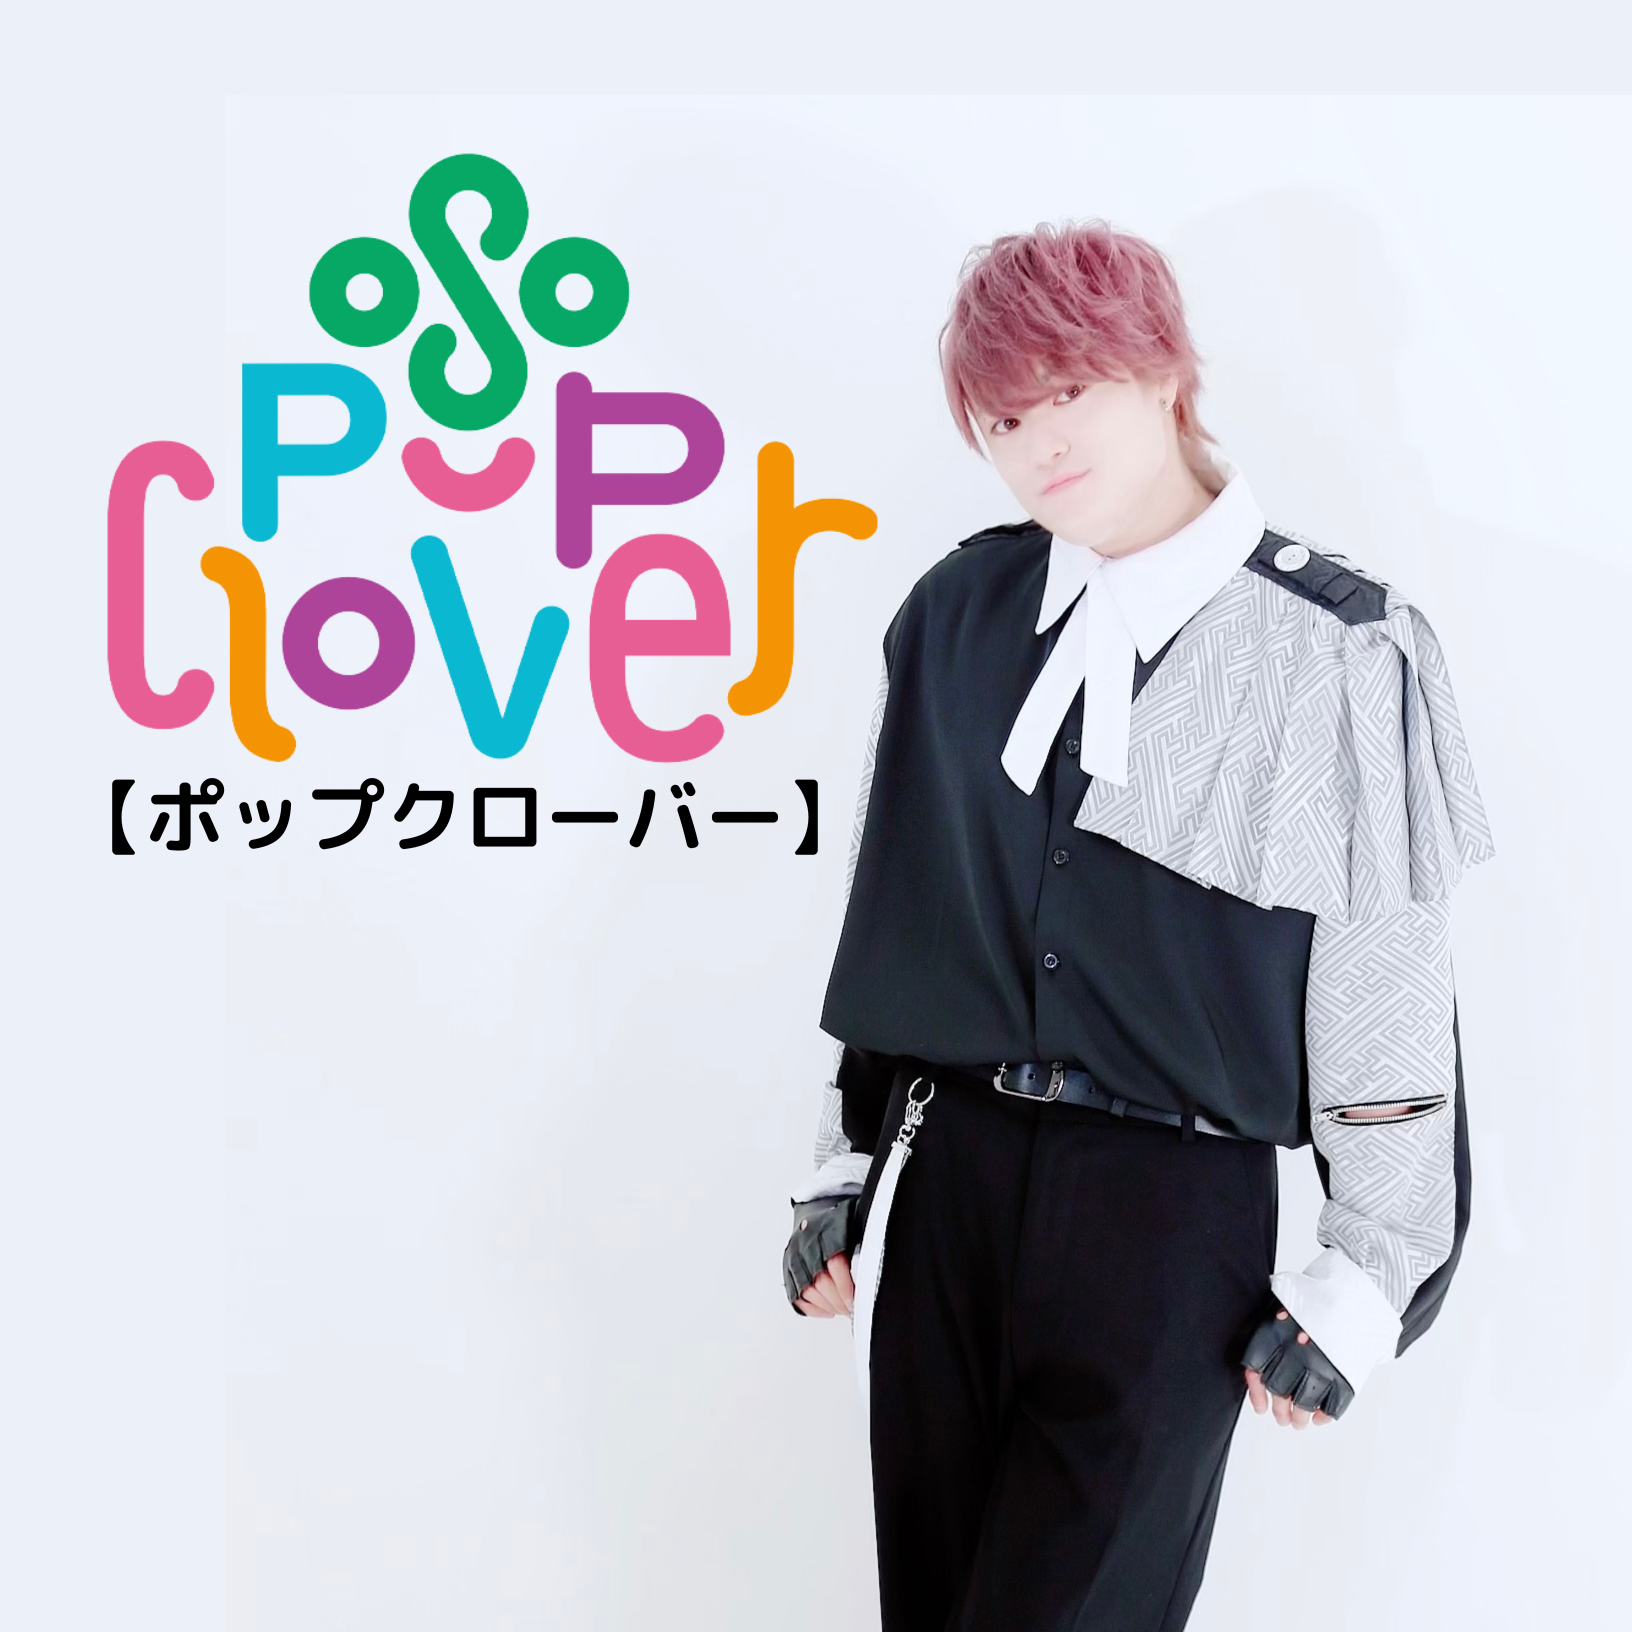 オーディション [名古屋]メンズアイドル「Pop Clover」追加メンバーオーディション 主催：KISS Promotion、カテゴリ：メンズアイドル